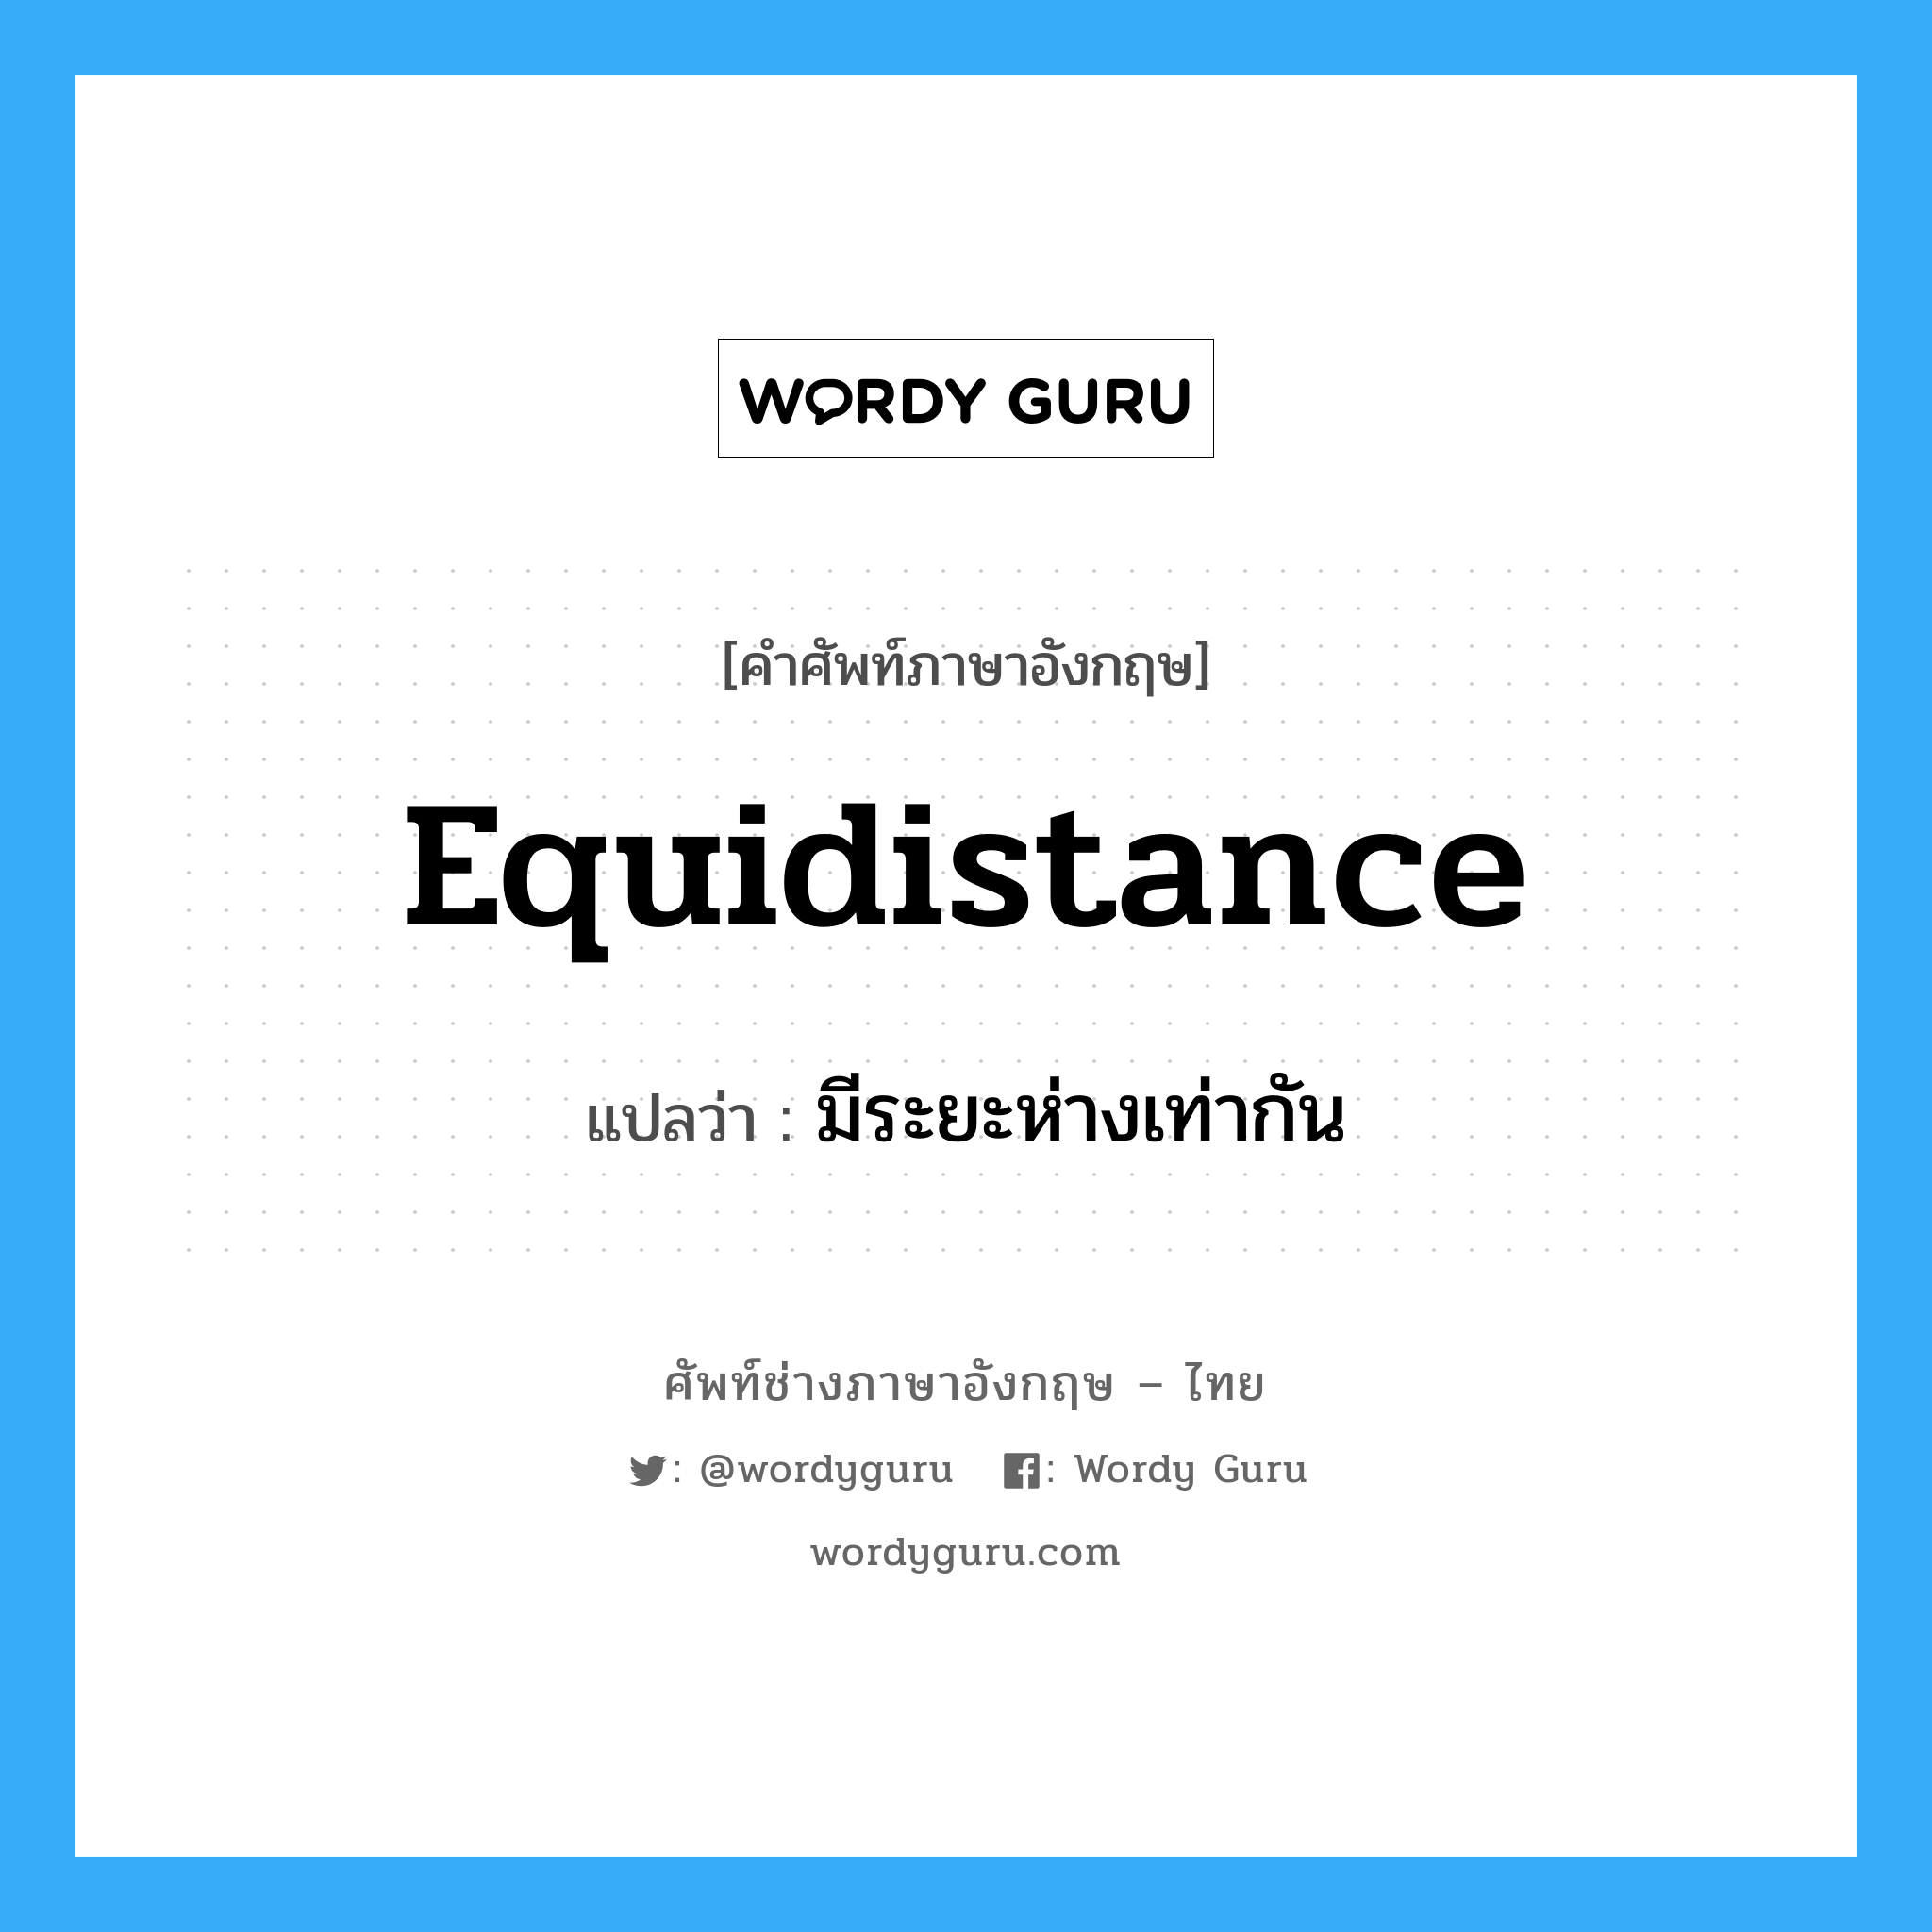 มีระยะห่างเท่ากัน ภาษาอังกฤษ?, คำศัพท์ช่างภาษาอังกฤษ - ไทย มีระยะห่างเท่ากัน คำศัพท์ภาษาอังกฤษ มีระยะห่างเท่ากัน แปลว่า equidistance